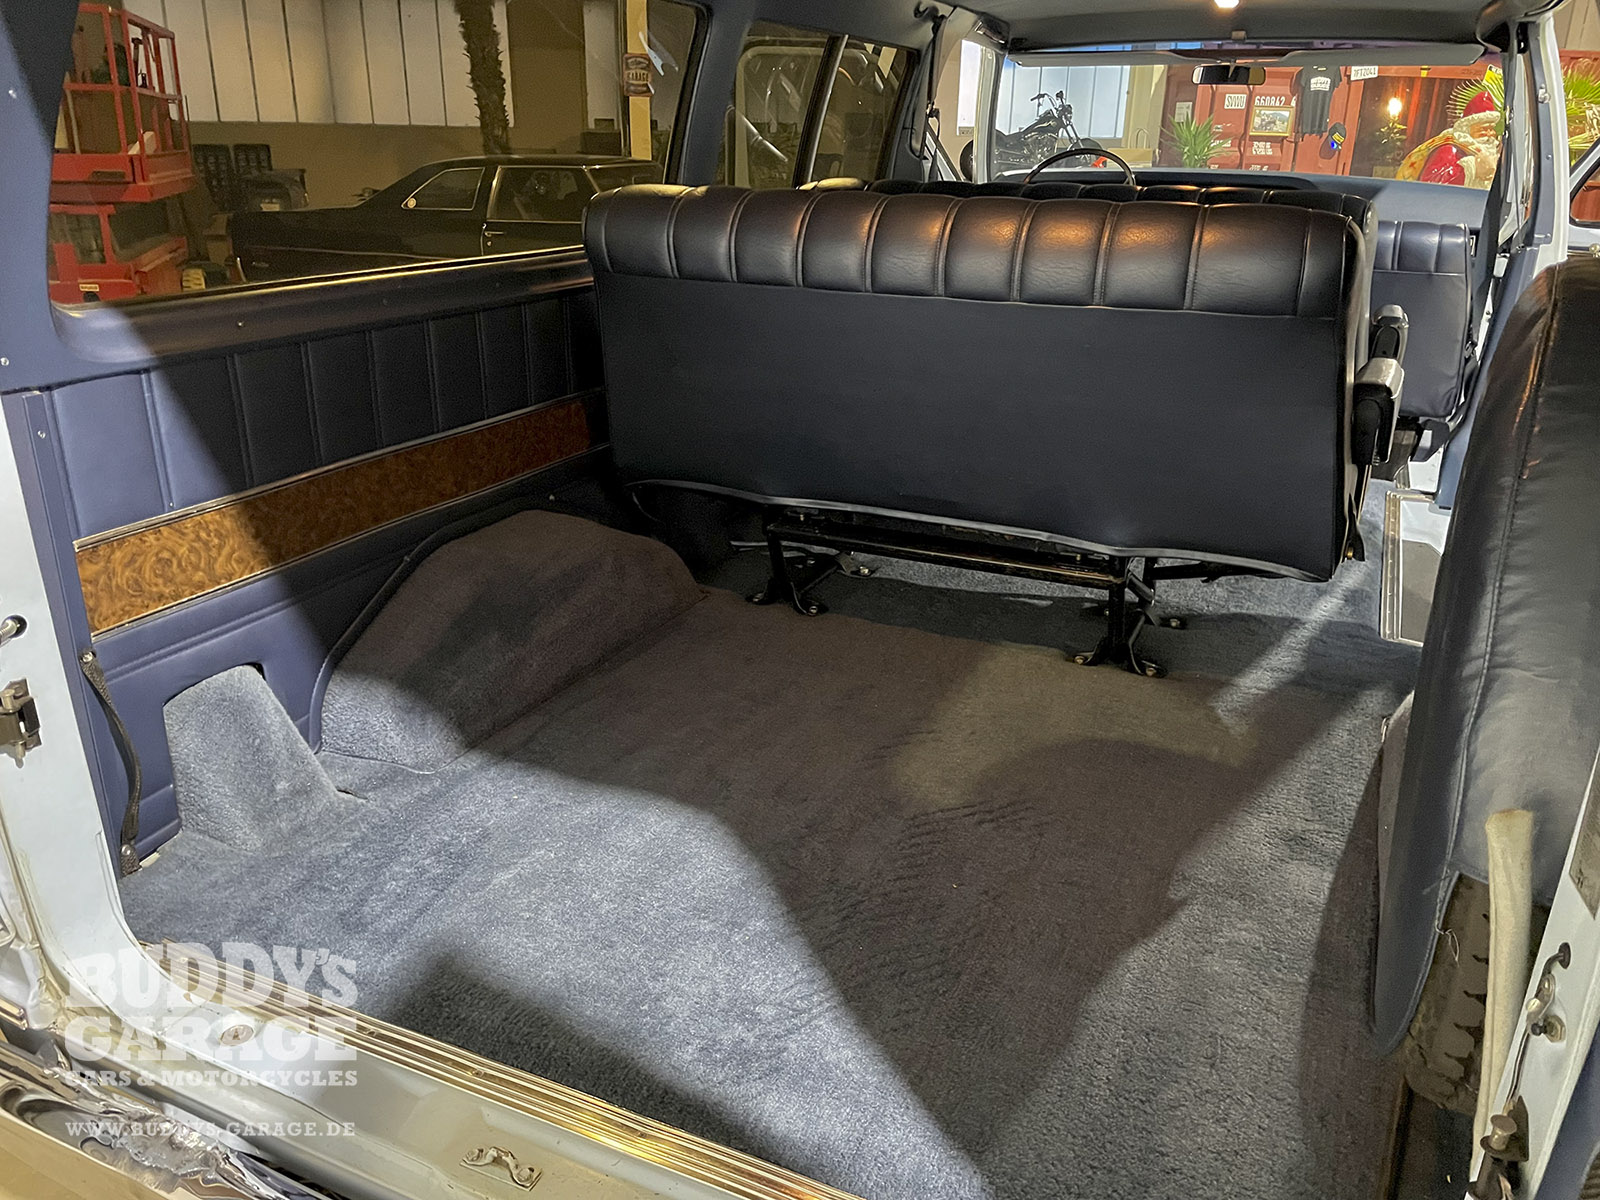 Ford Econoline E-250 Club Wagon 1977 | Buddy's Garage Bad Oeynhausen